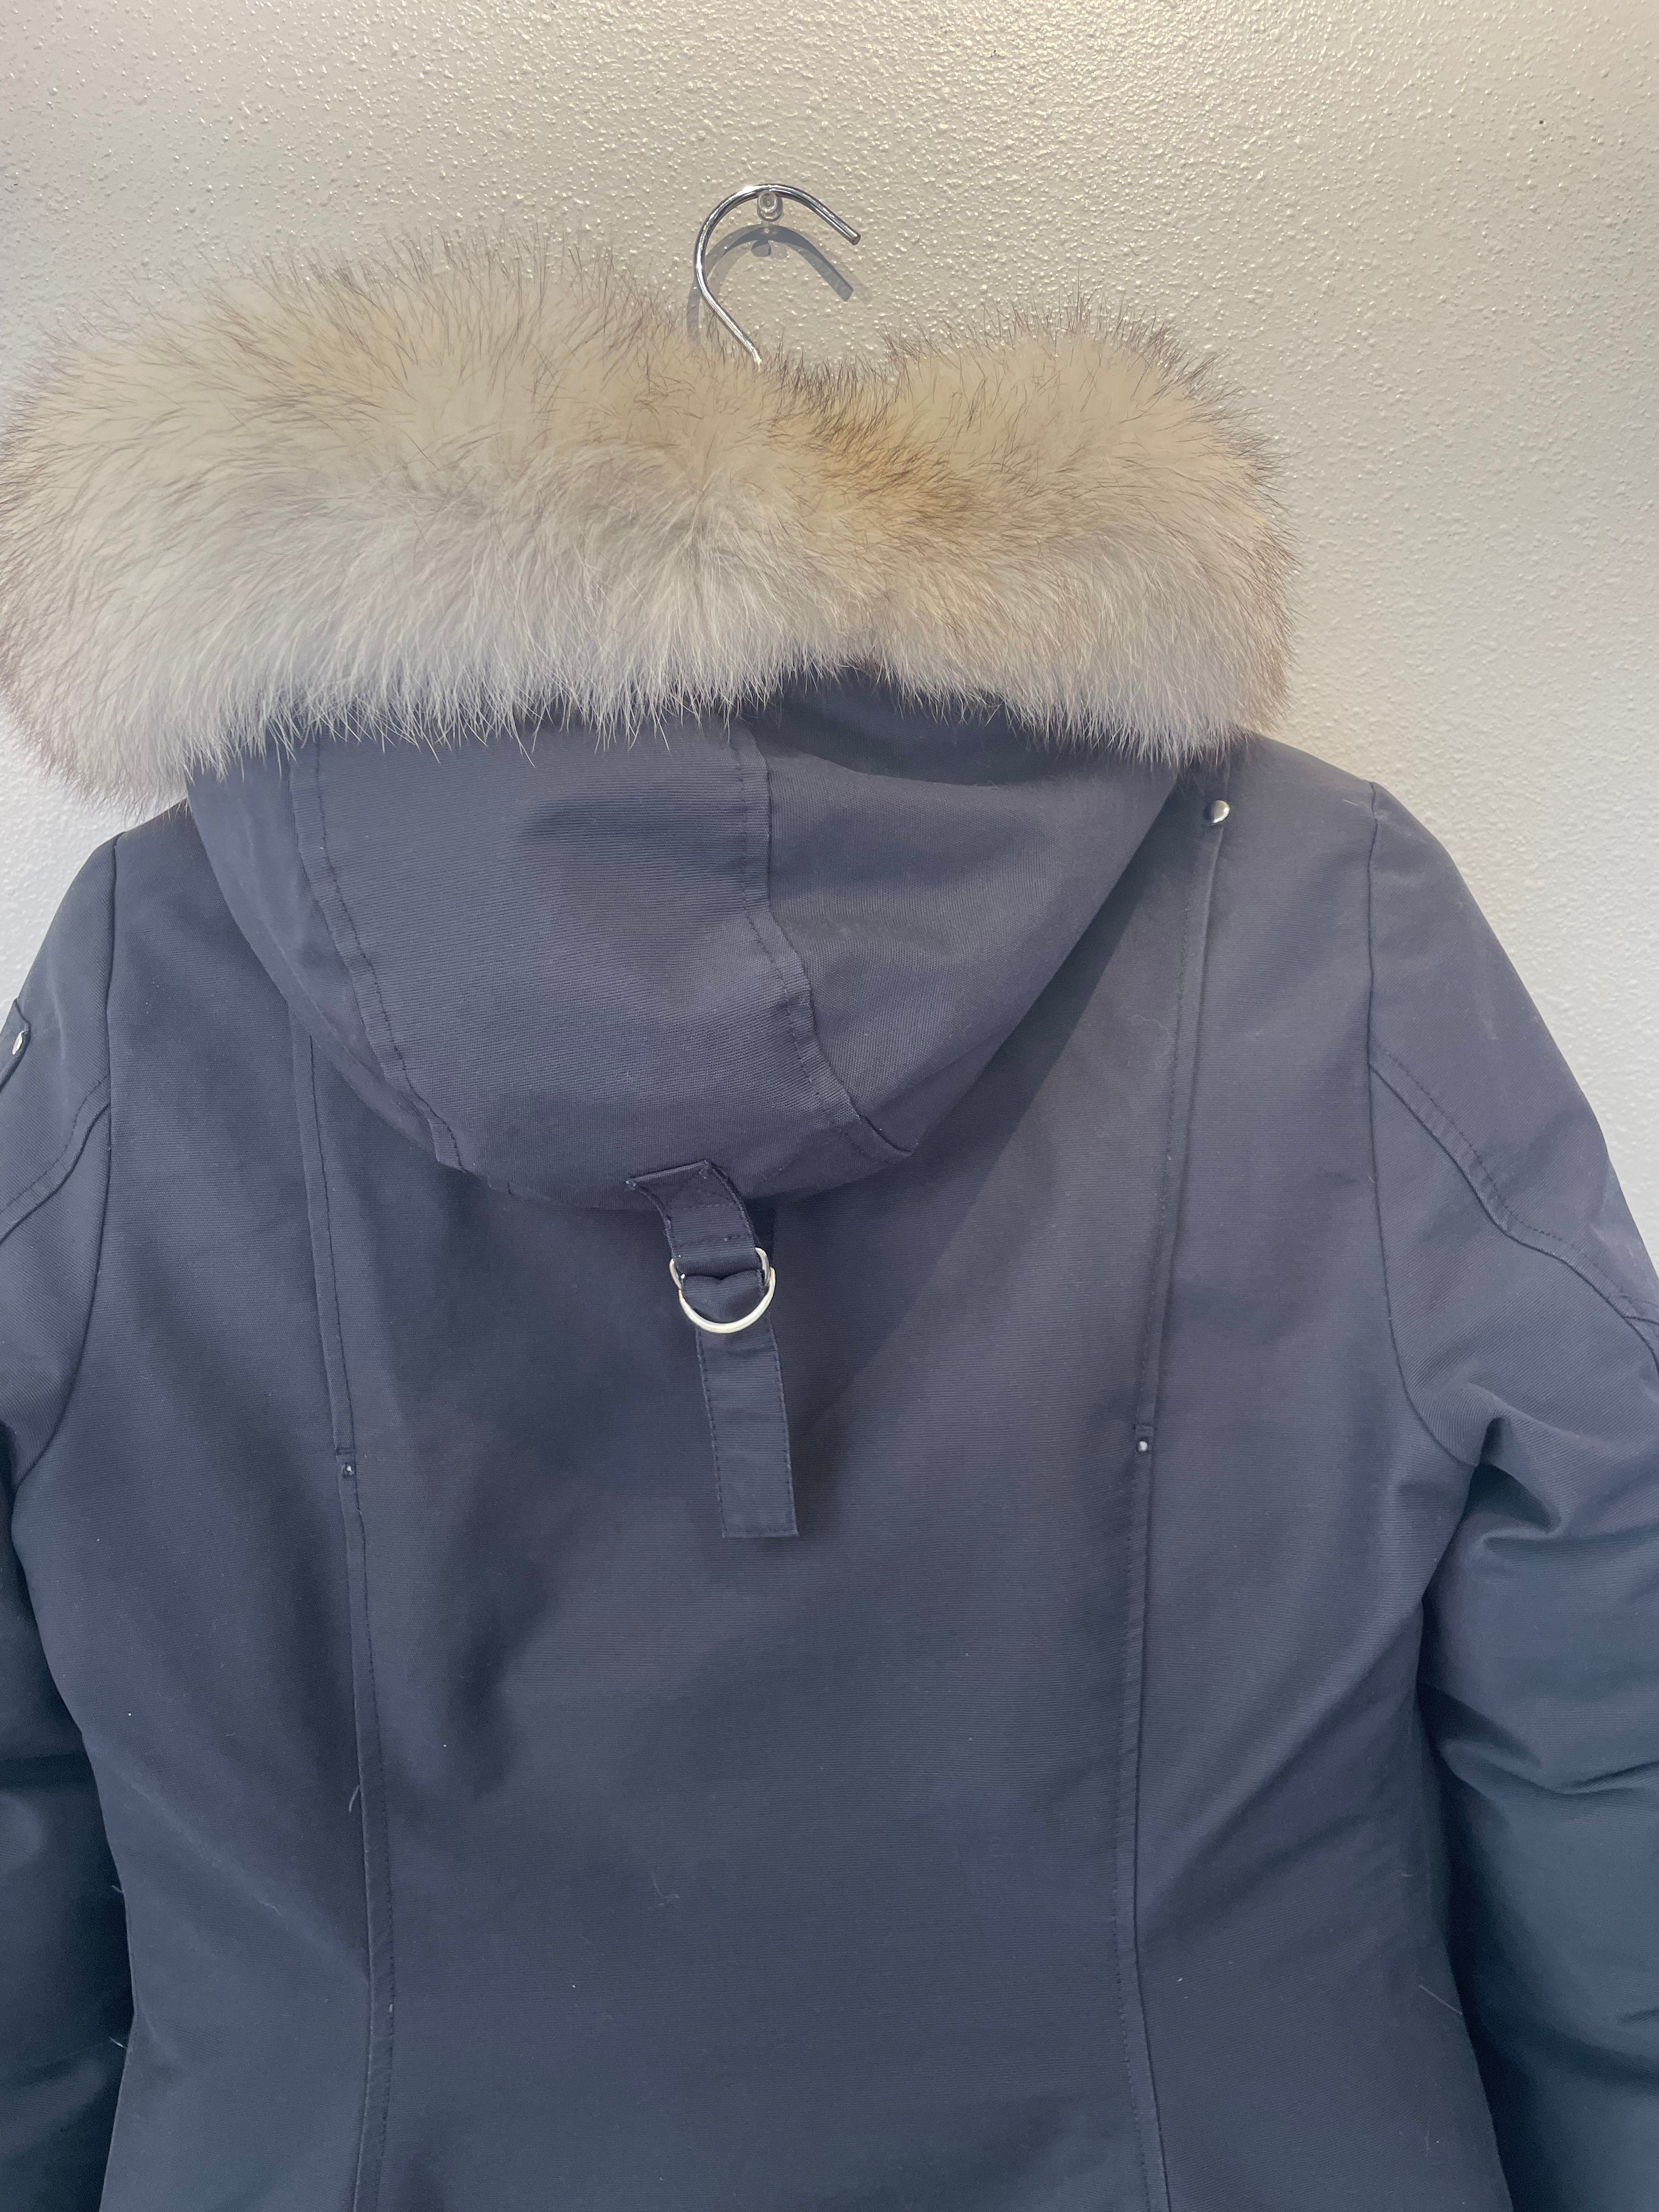 Moose Knuckles Original Stirling Cotton and Nylon-Blend Parka Jacket